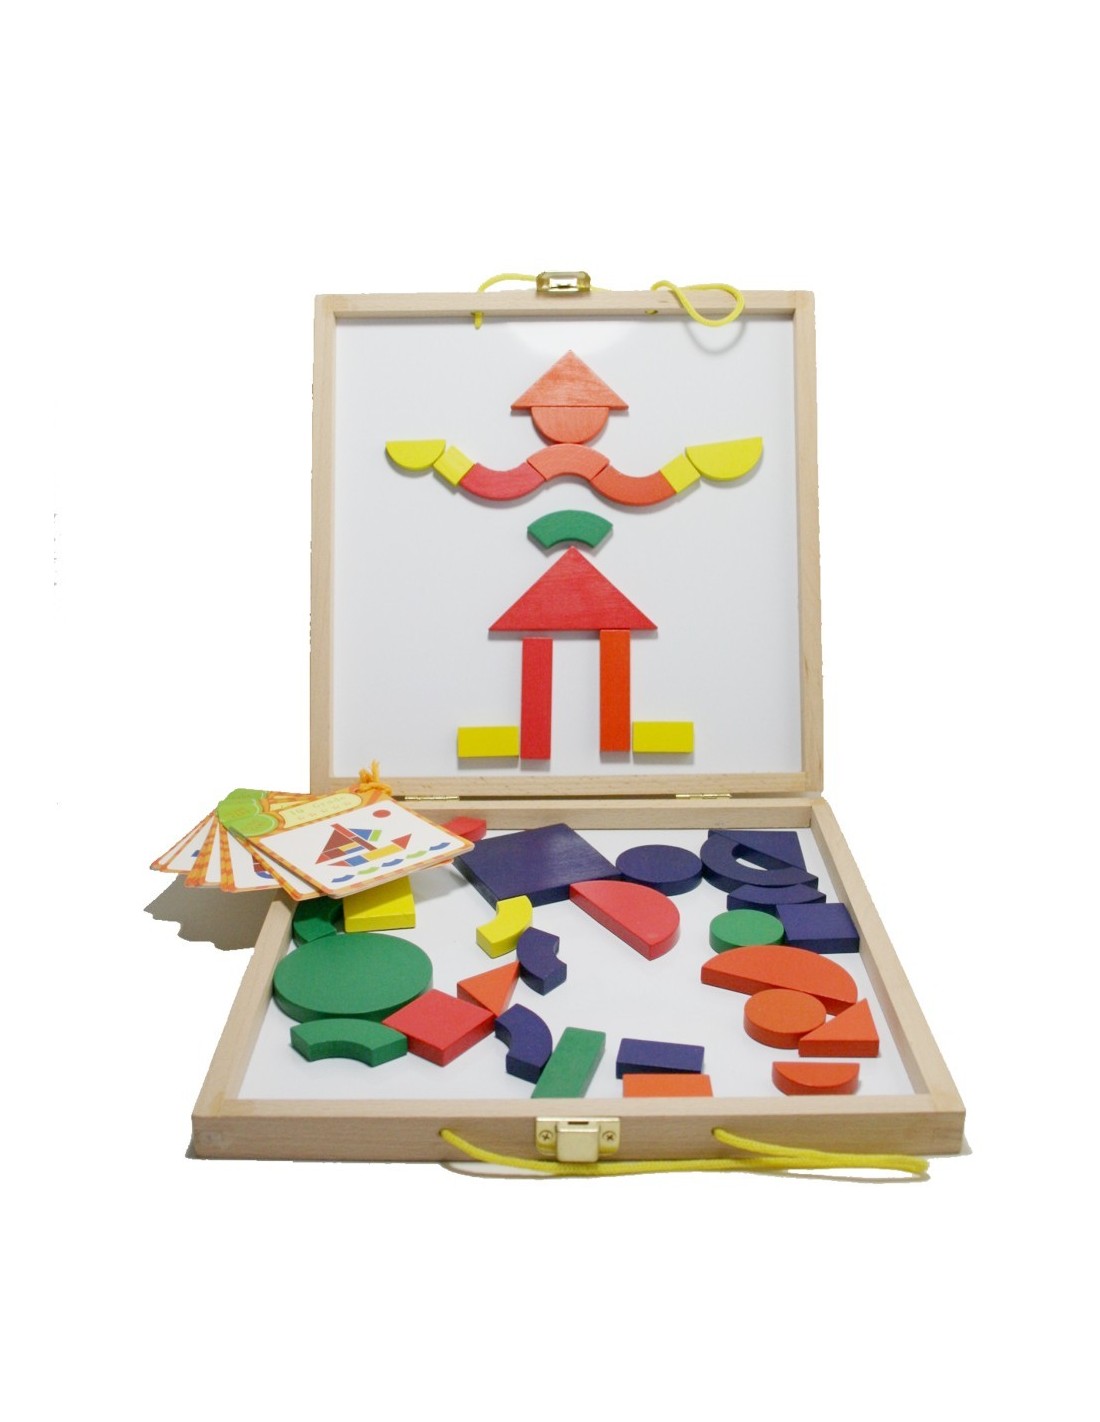 Juego de geometría con maleta de madera para transporte juego de habilidad y creatividad infantil